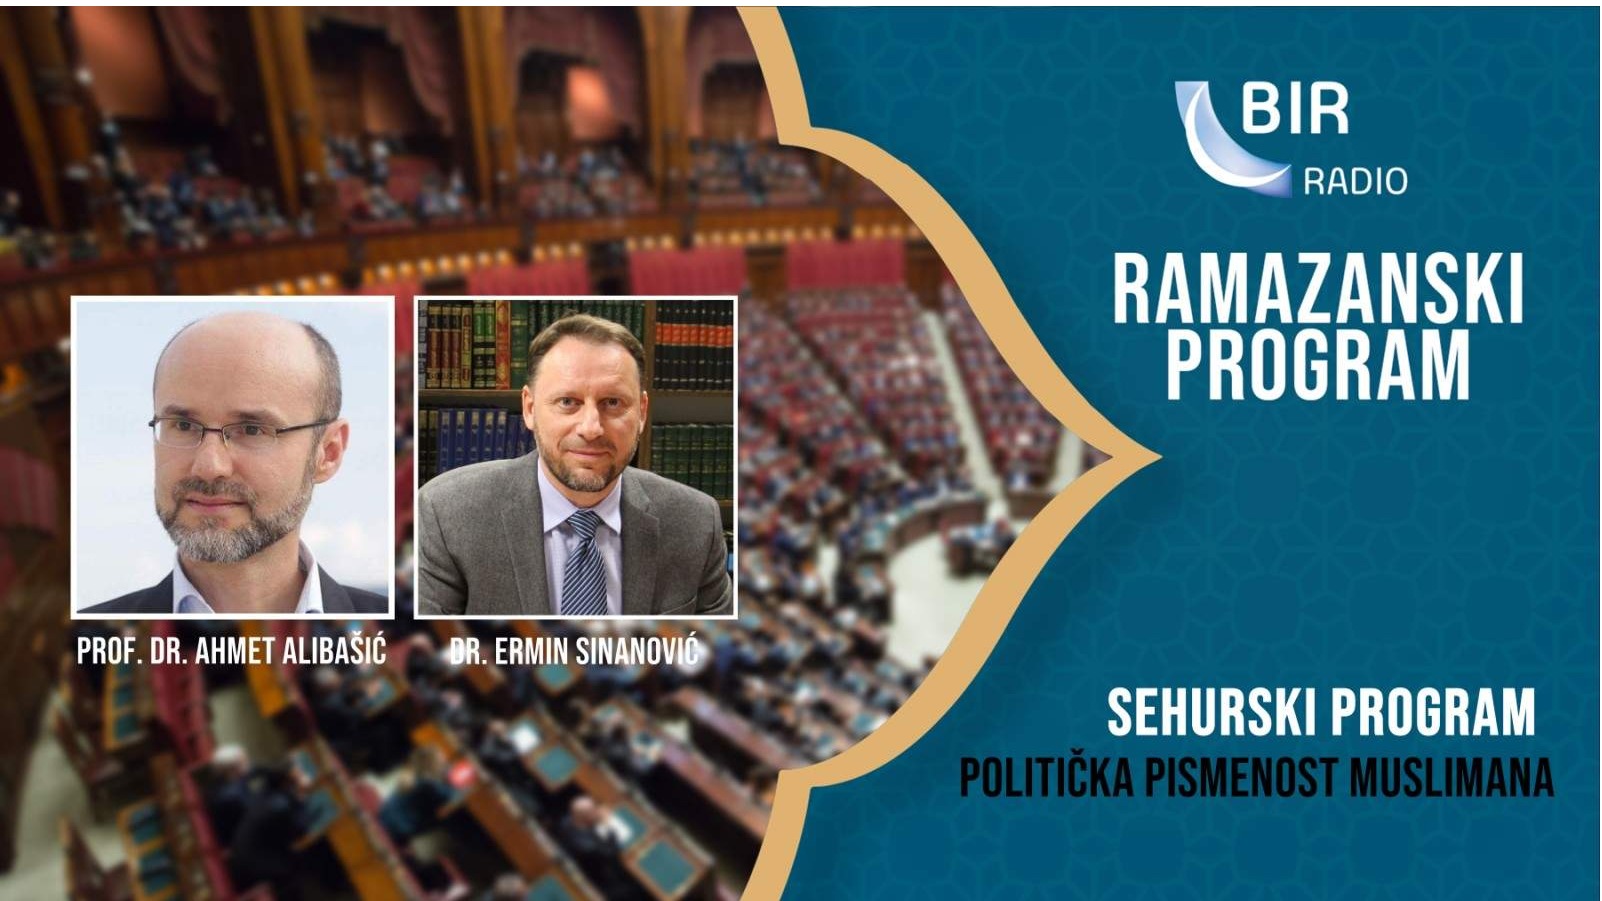 Sehurski program Radija BIR: Politička pismenost muslimana